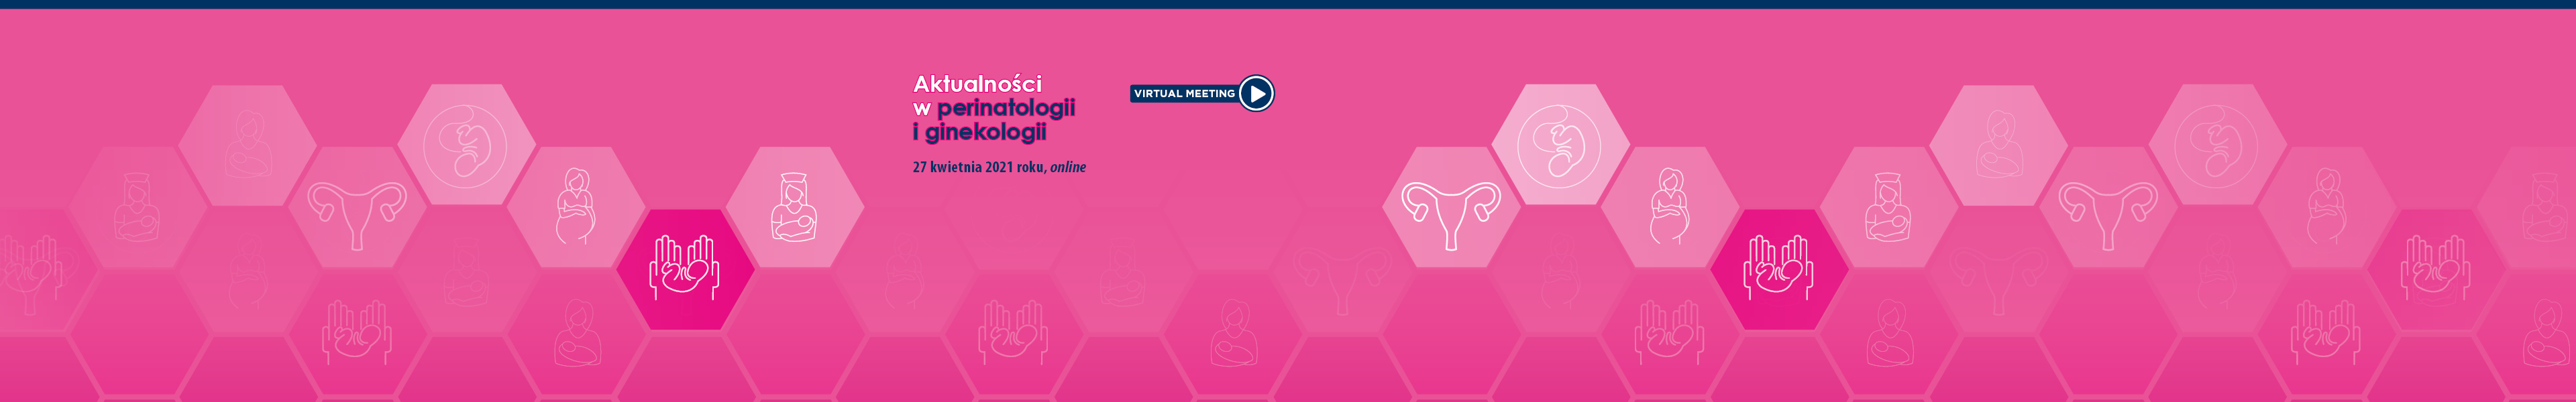 Aktualności w perinatologii i ginekologii 2021